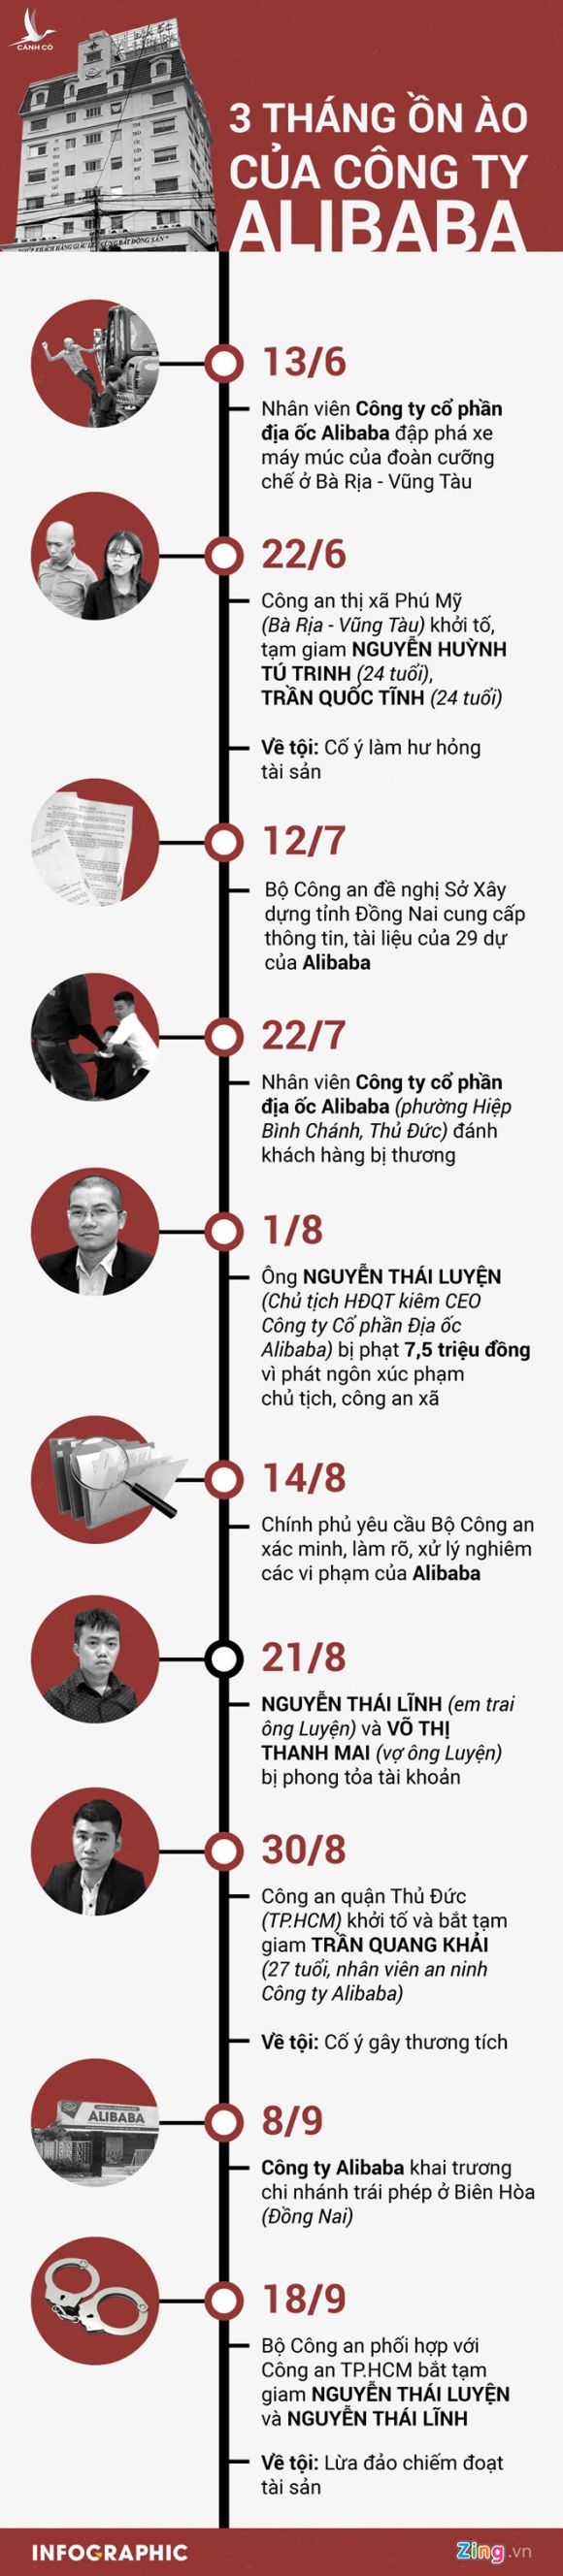 Cong an TP.HCM: Du tai lieu chung minh Chu tich HDQT Alibaba lua dao hinh anh 3 